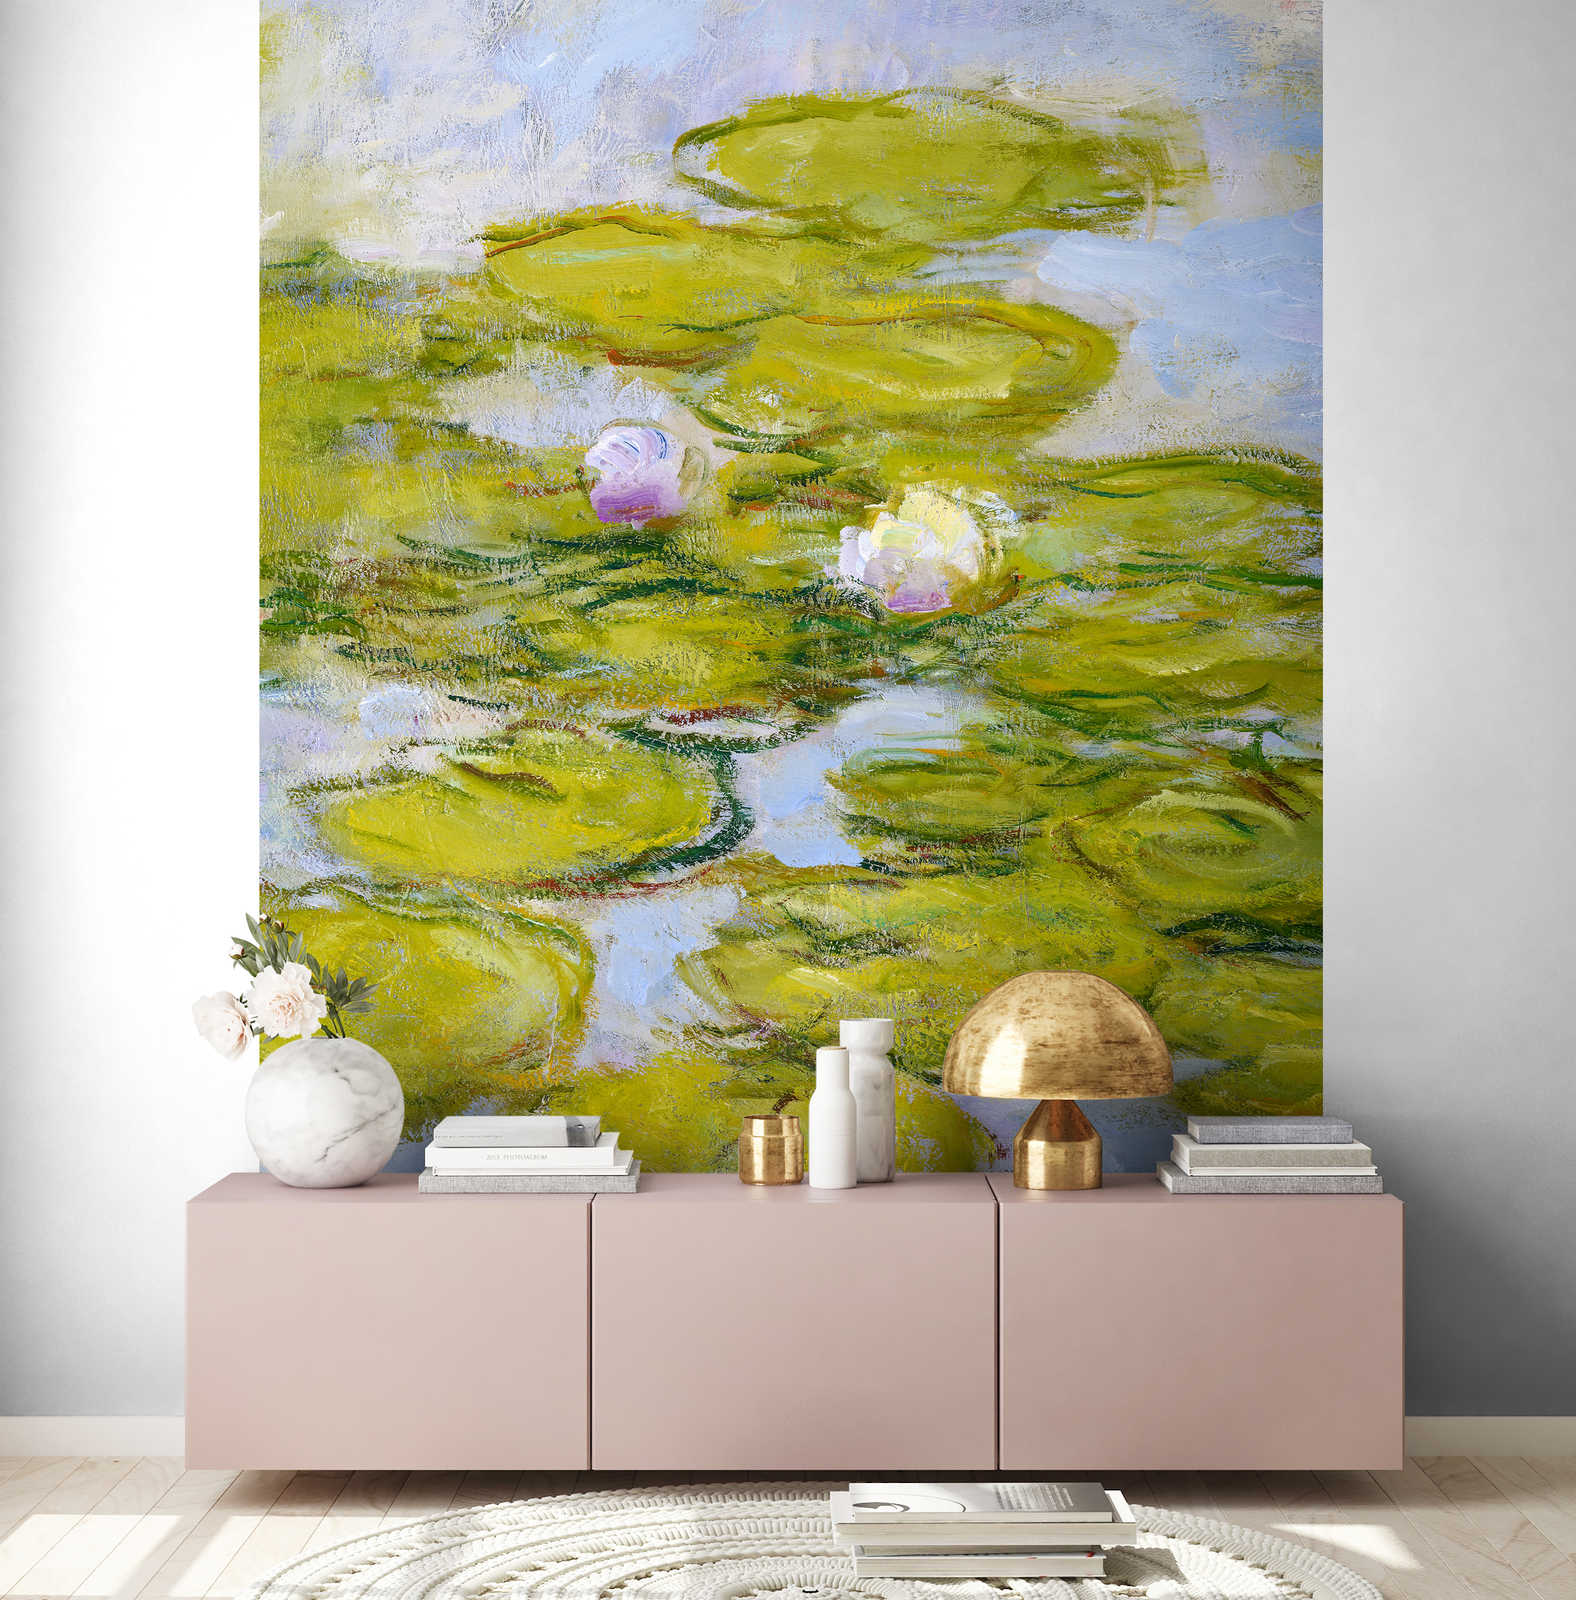             Fototapete "Nymphen" von Claude Monet
        